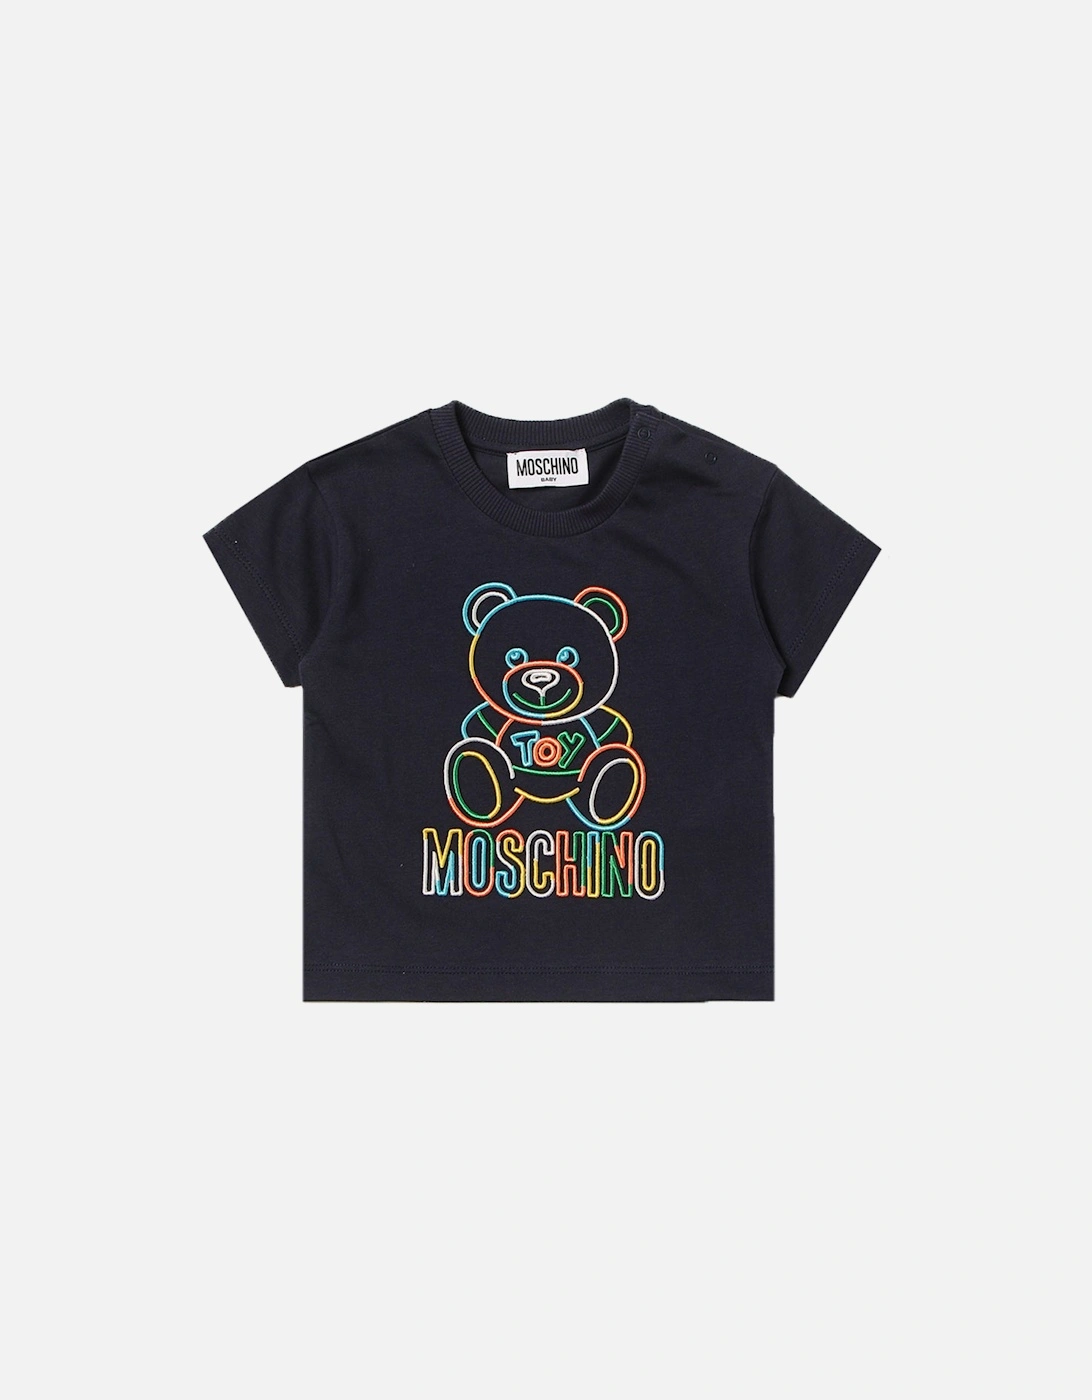 Moshino - Baby Boys T-shirt Navy, 2 of 1